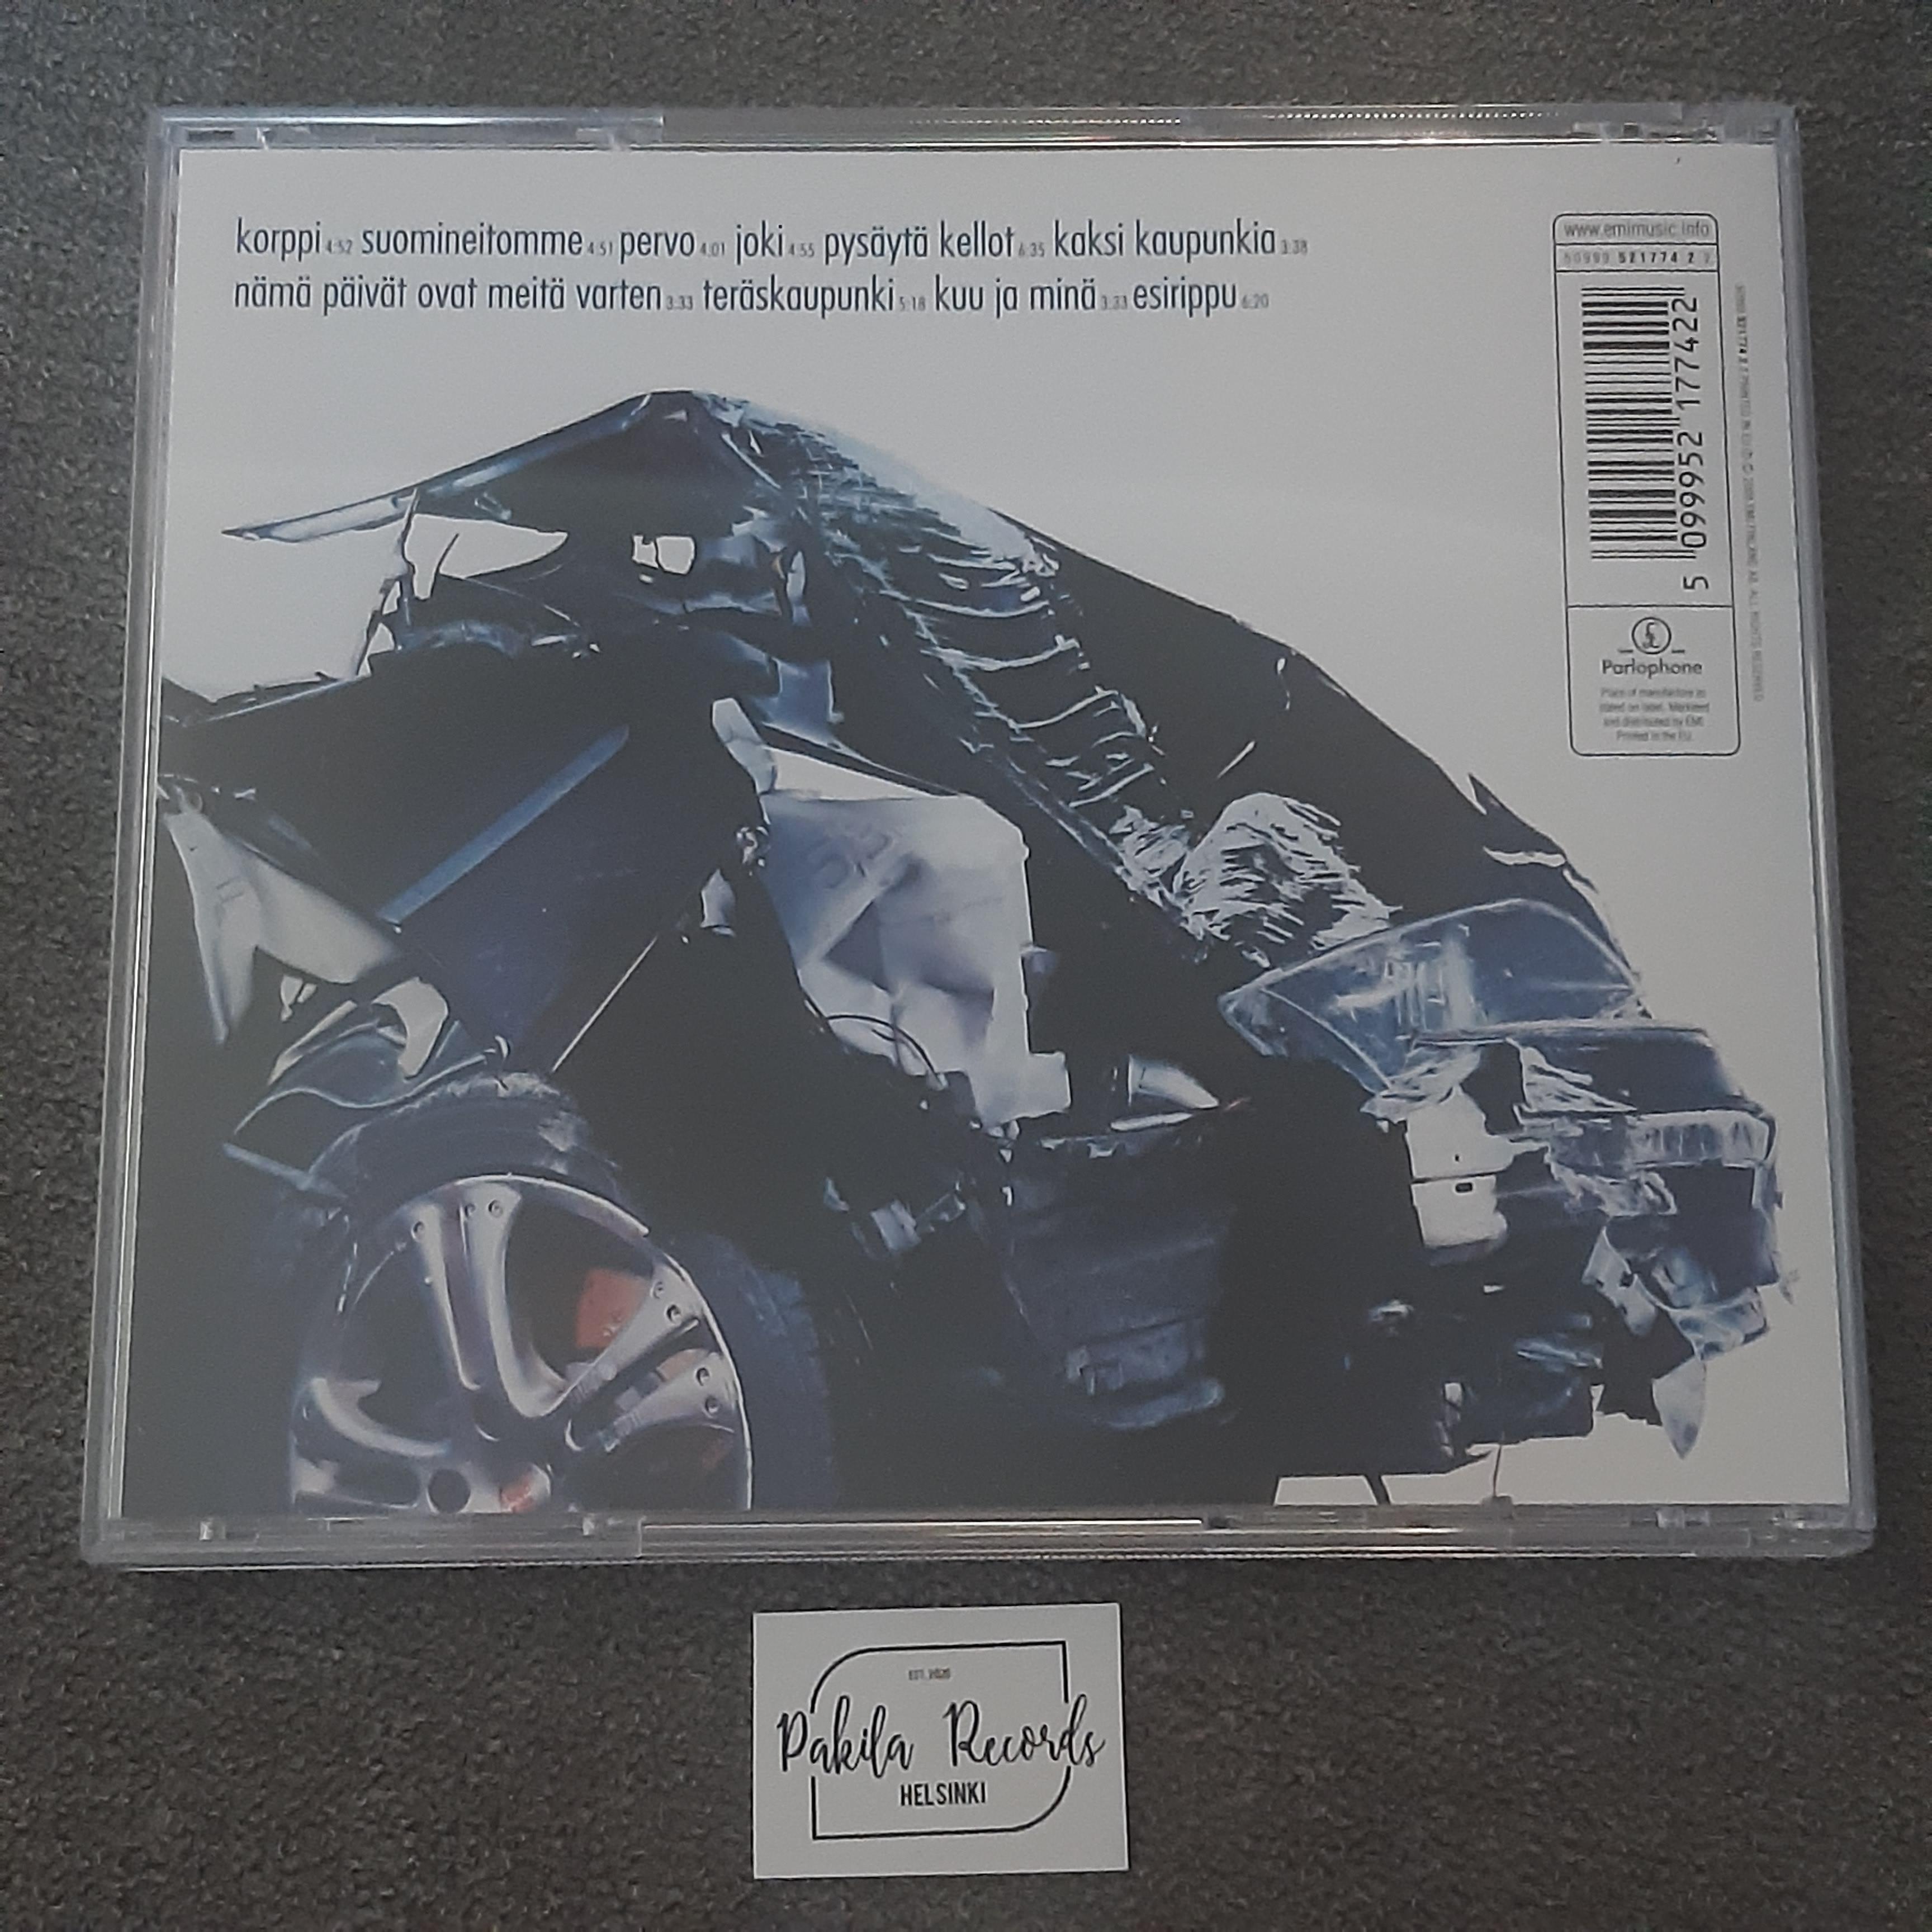 Kalle Ahola - Audio Wunderbaum - CD (käytetty)